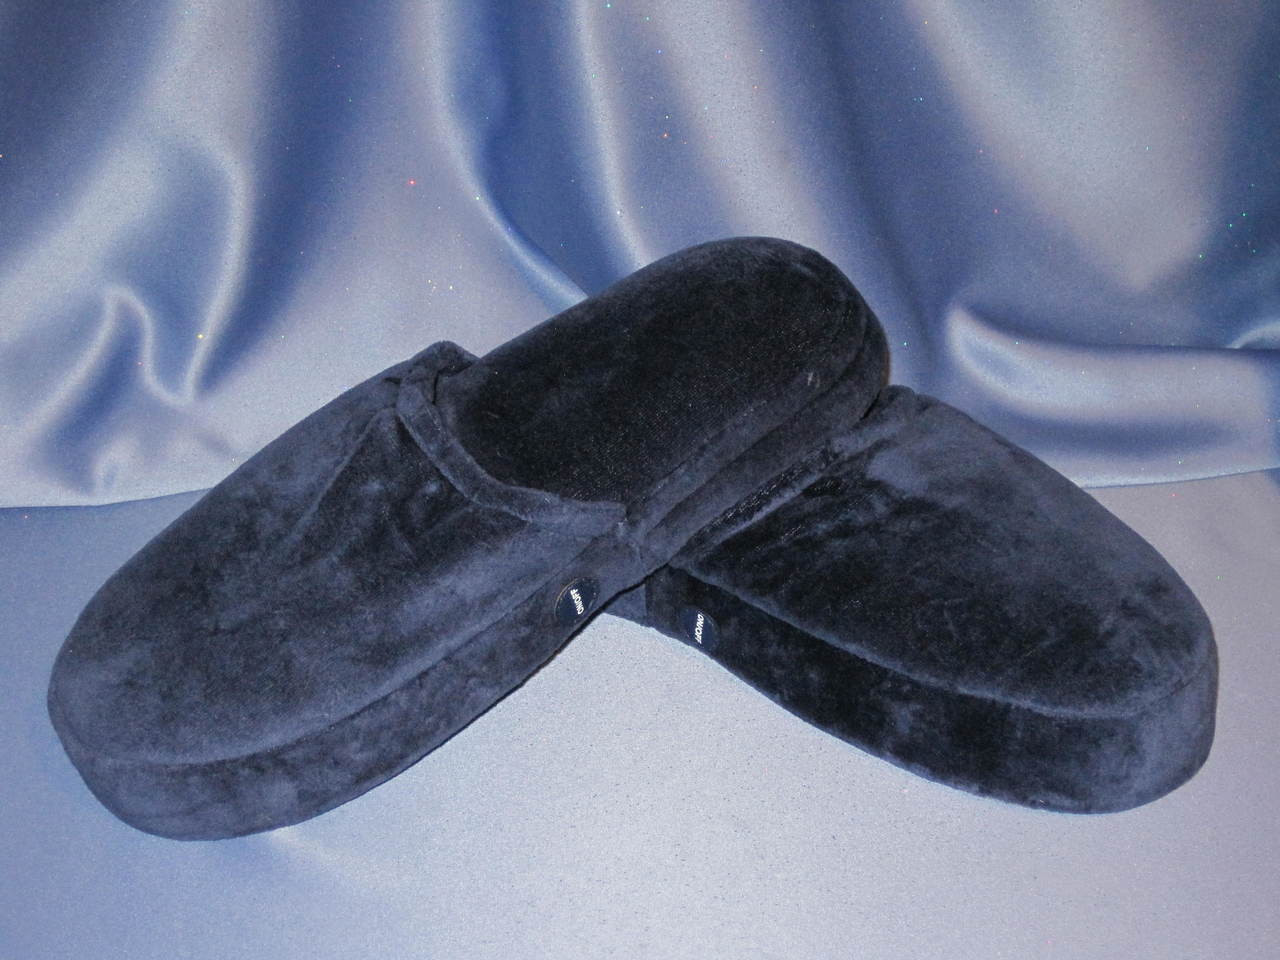 homedics slippers